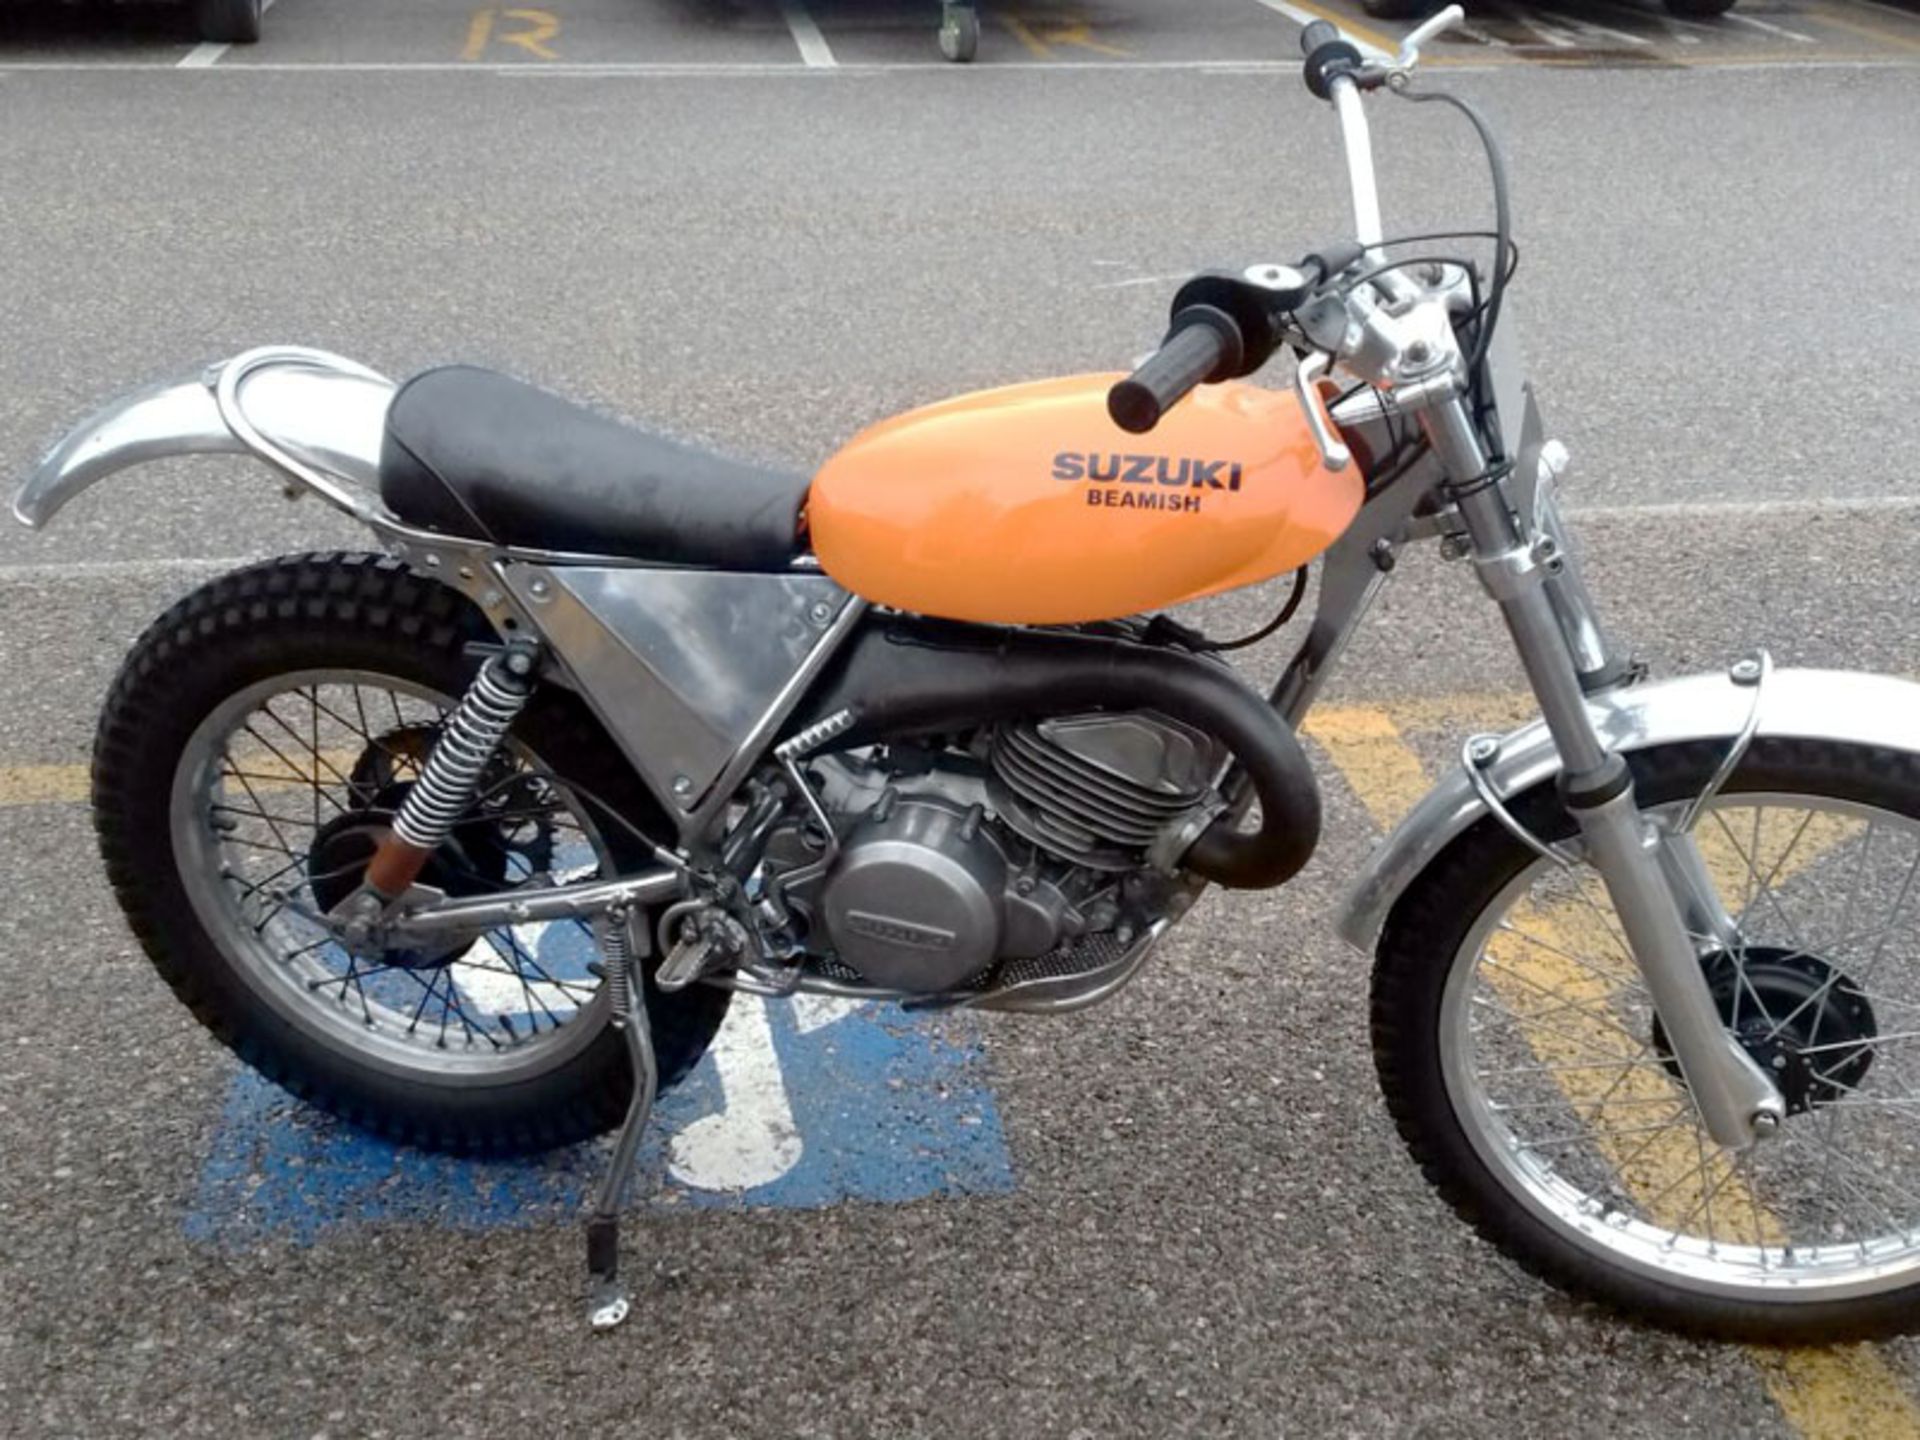 1977 Suzuki Beamish